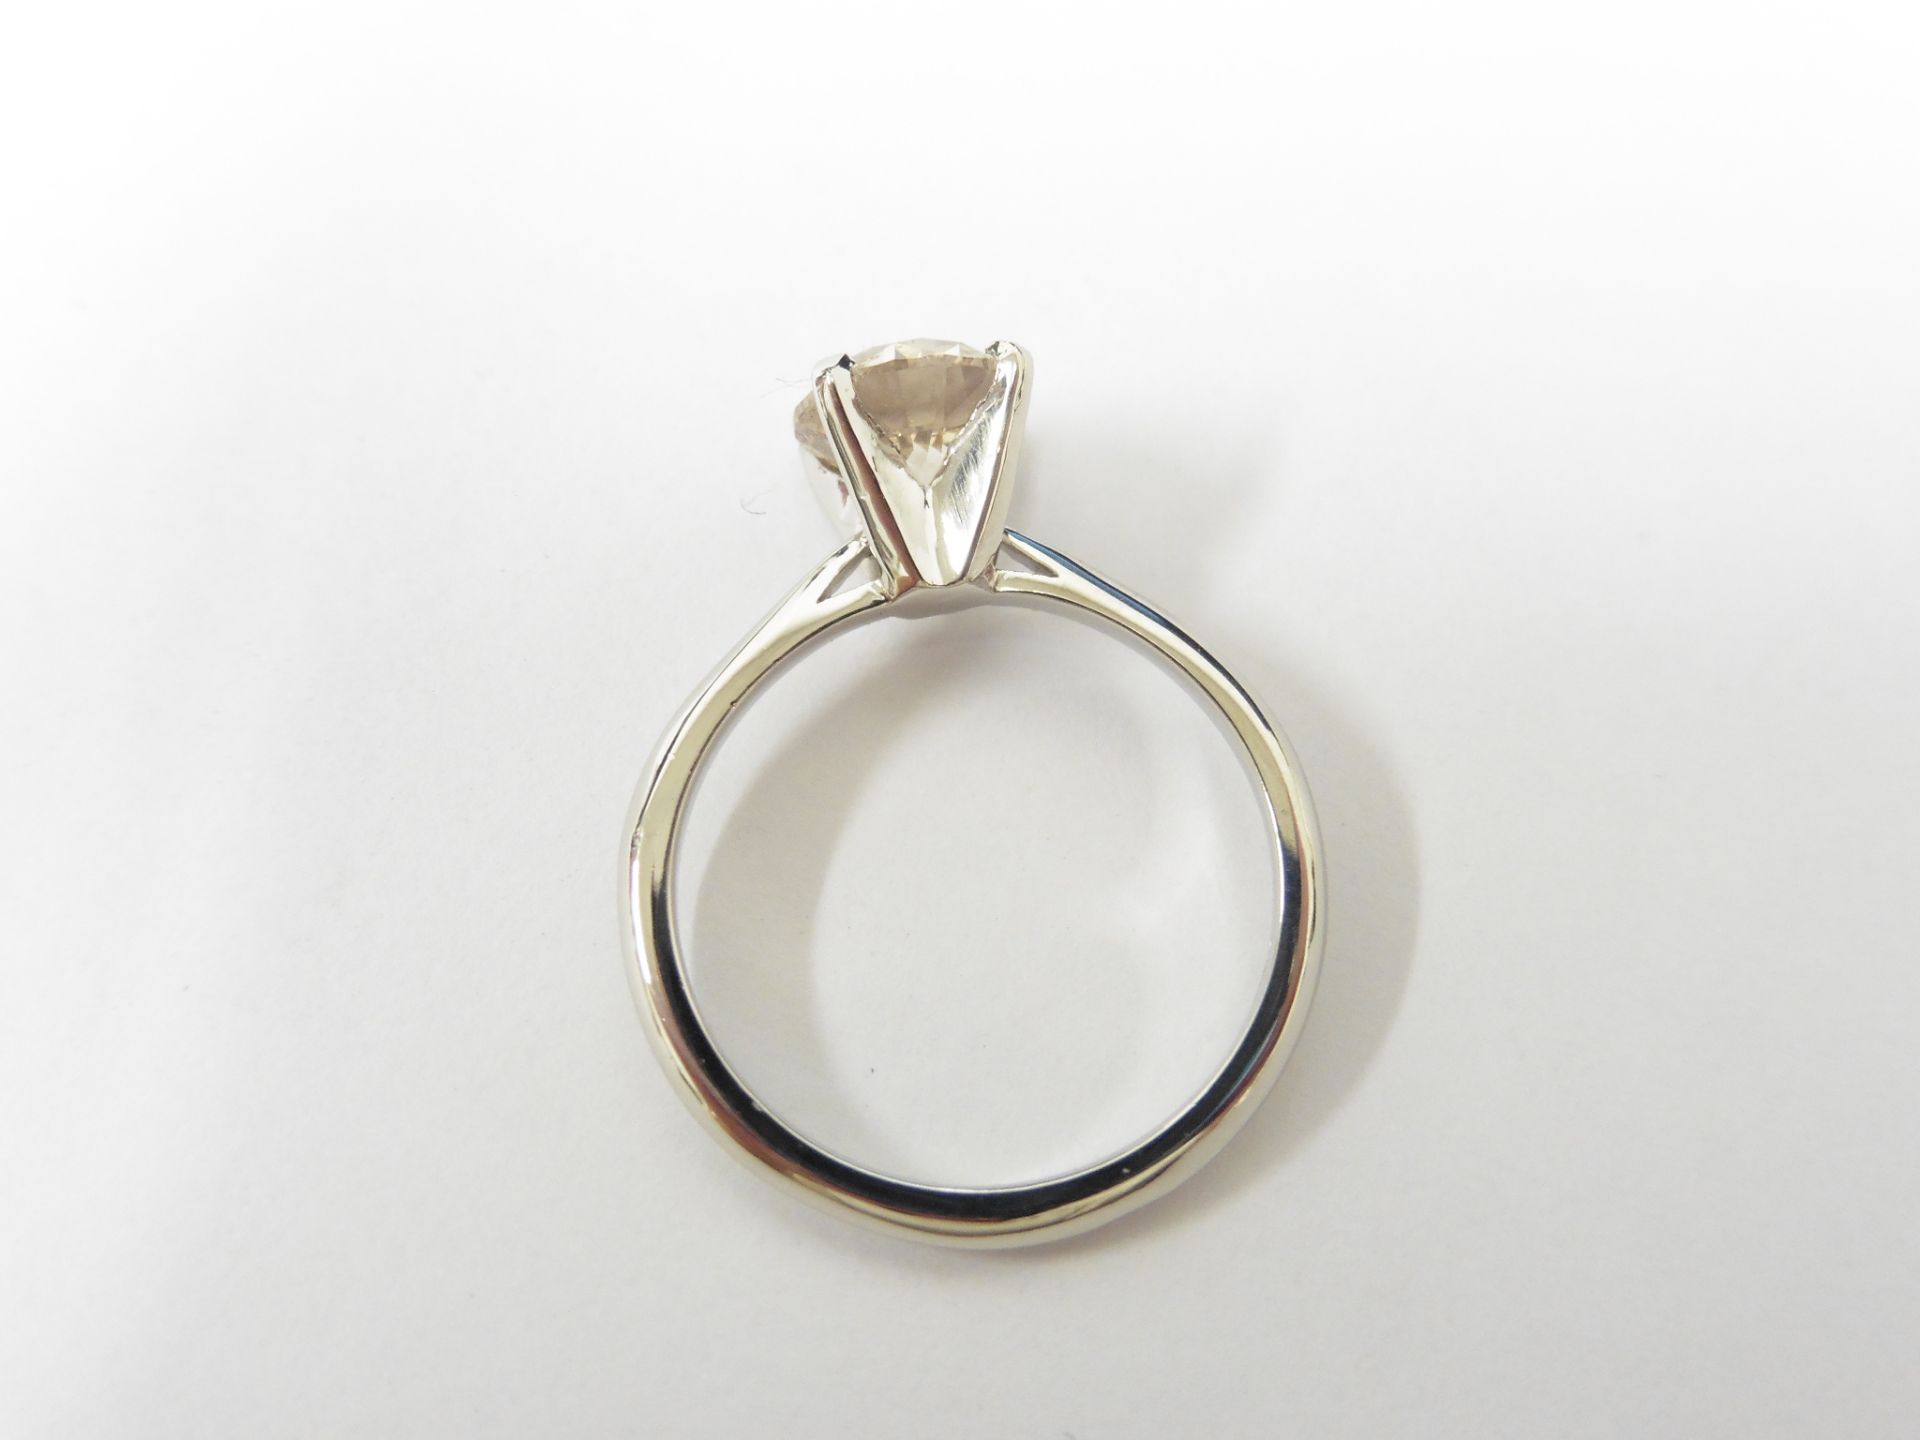 1.27Ct Diamond Solitaire Ring Set In Platinum. - Image 3 of 3